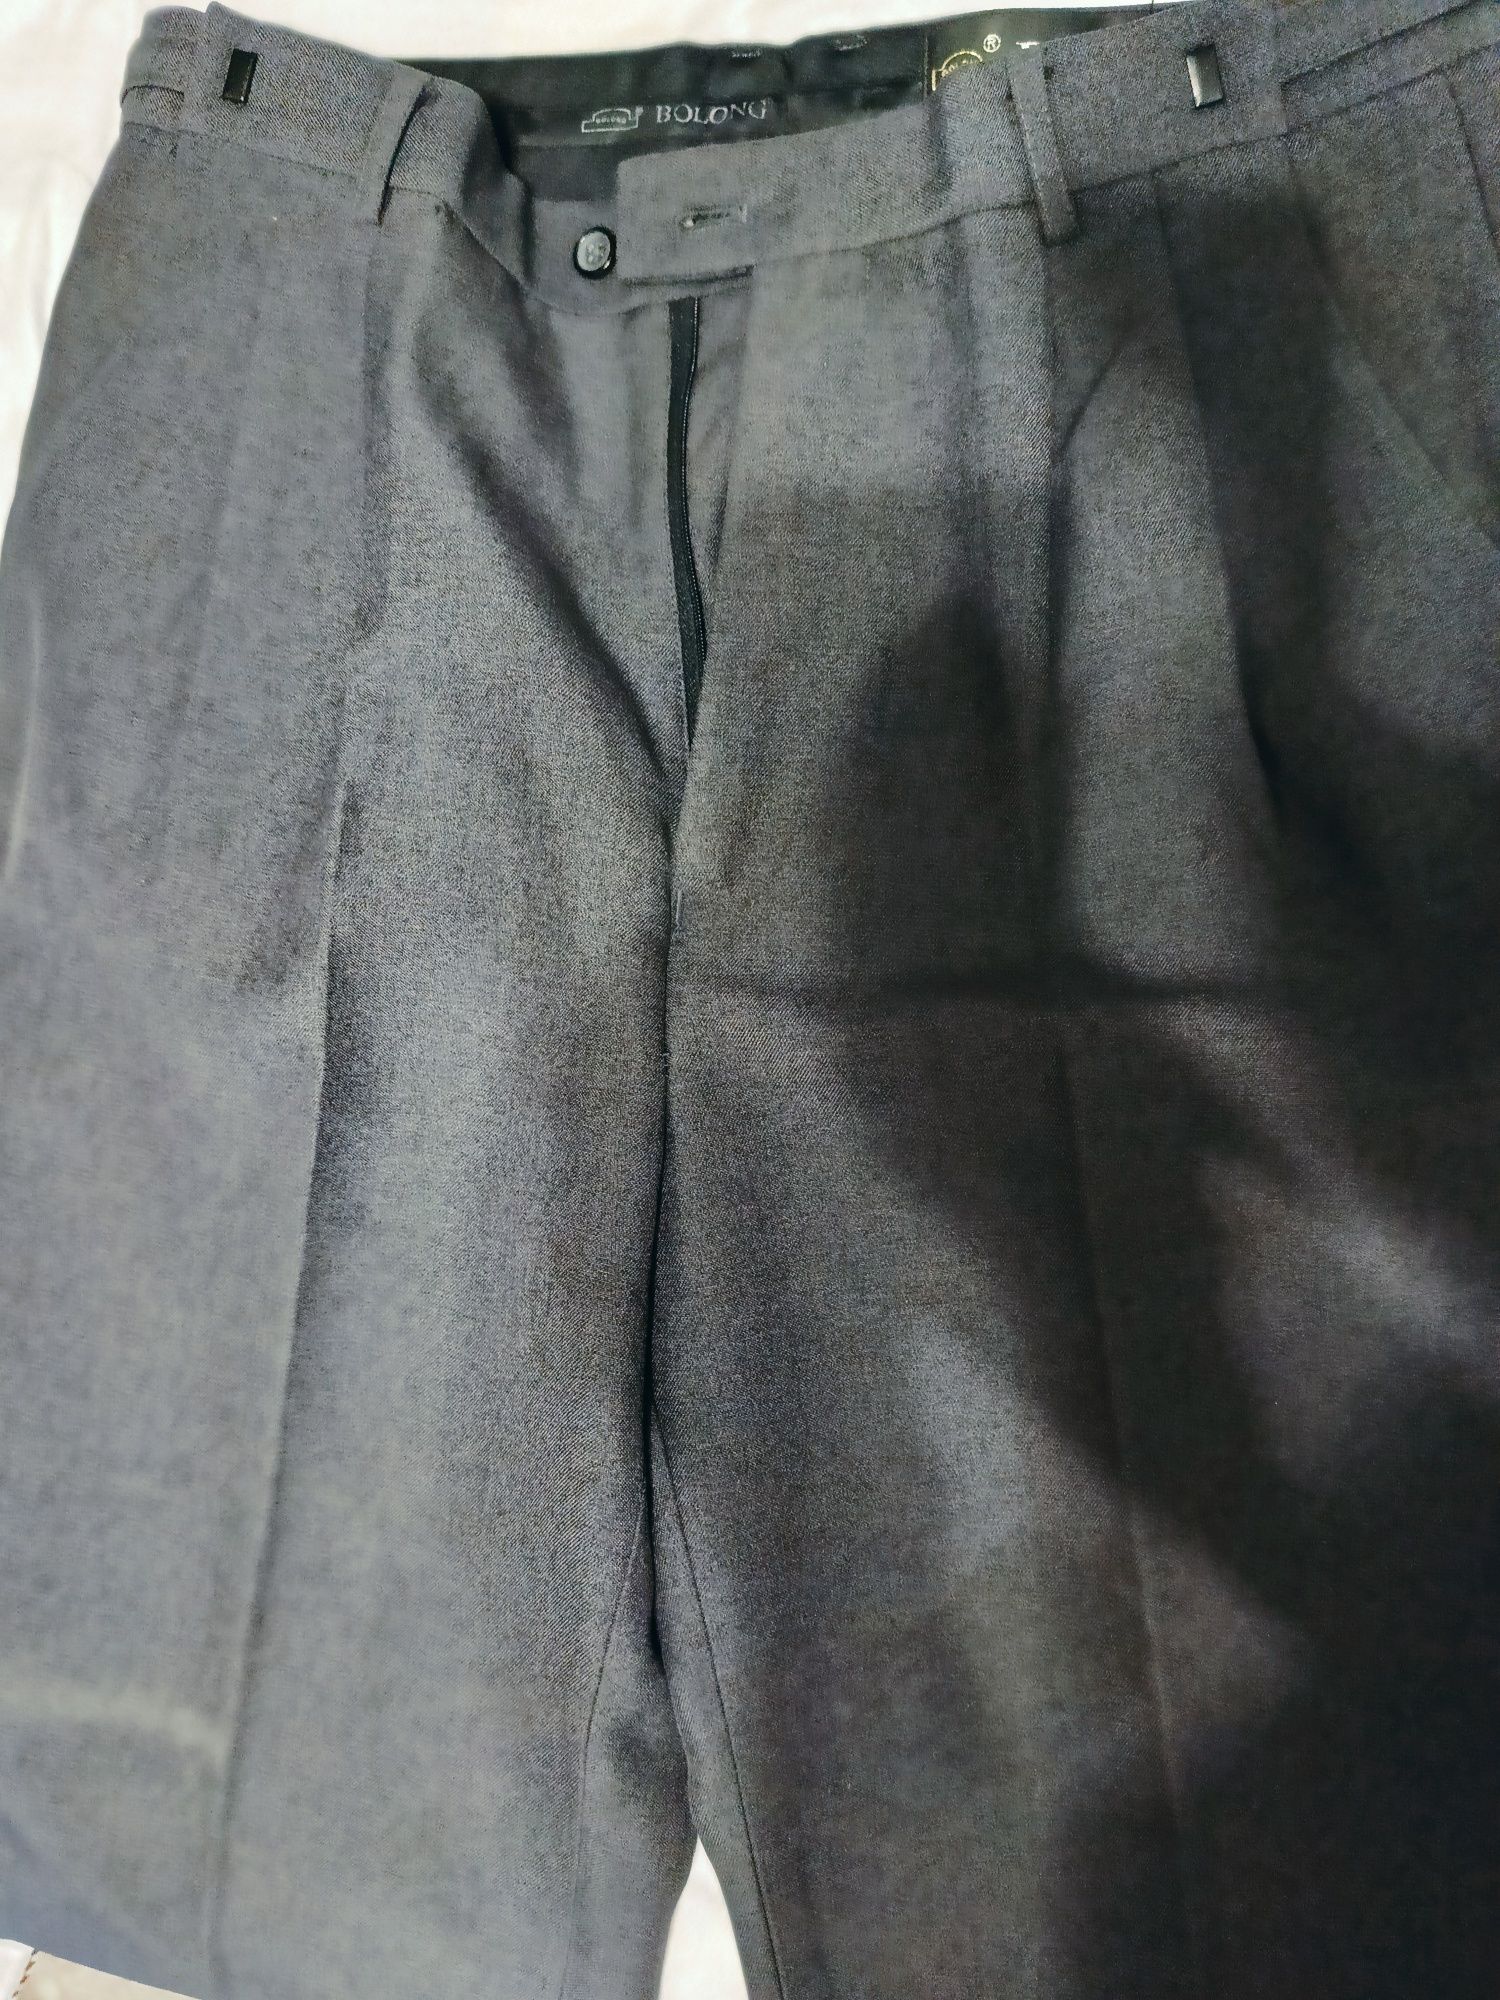 Продам классический мужской костюм тройку серого цвета 50/52 р-р